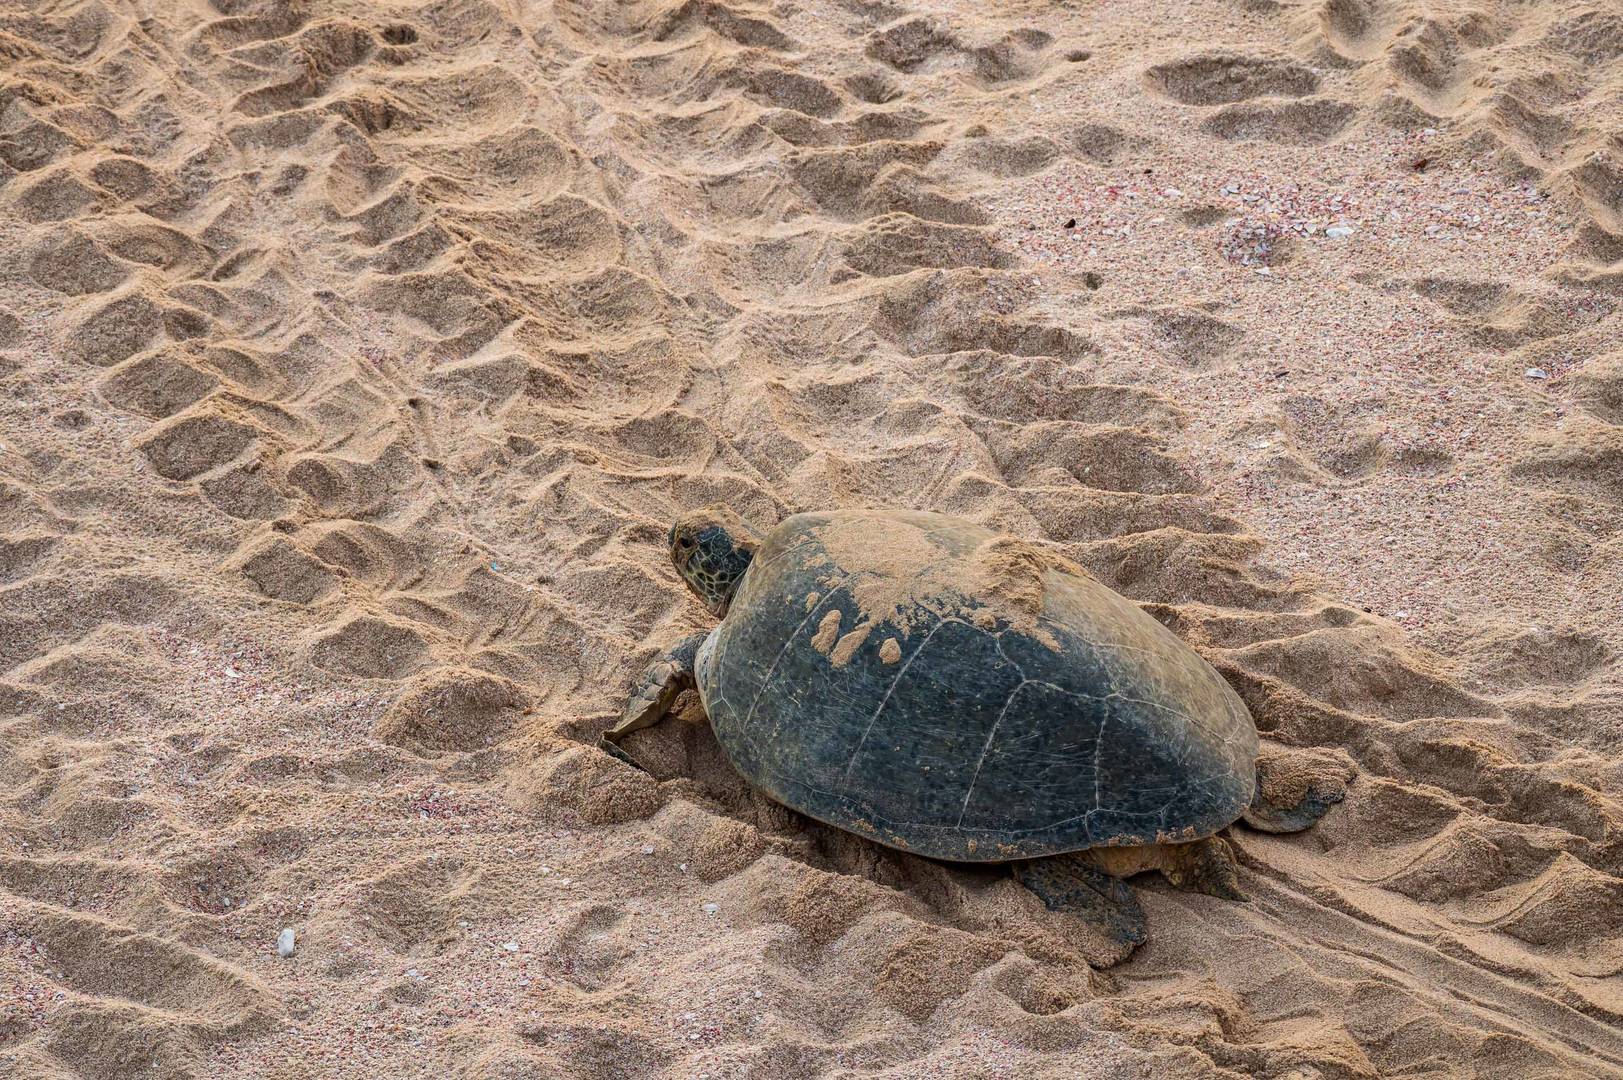 A green backed turtle in Ras Al Jinz